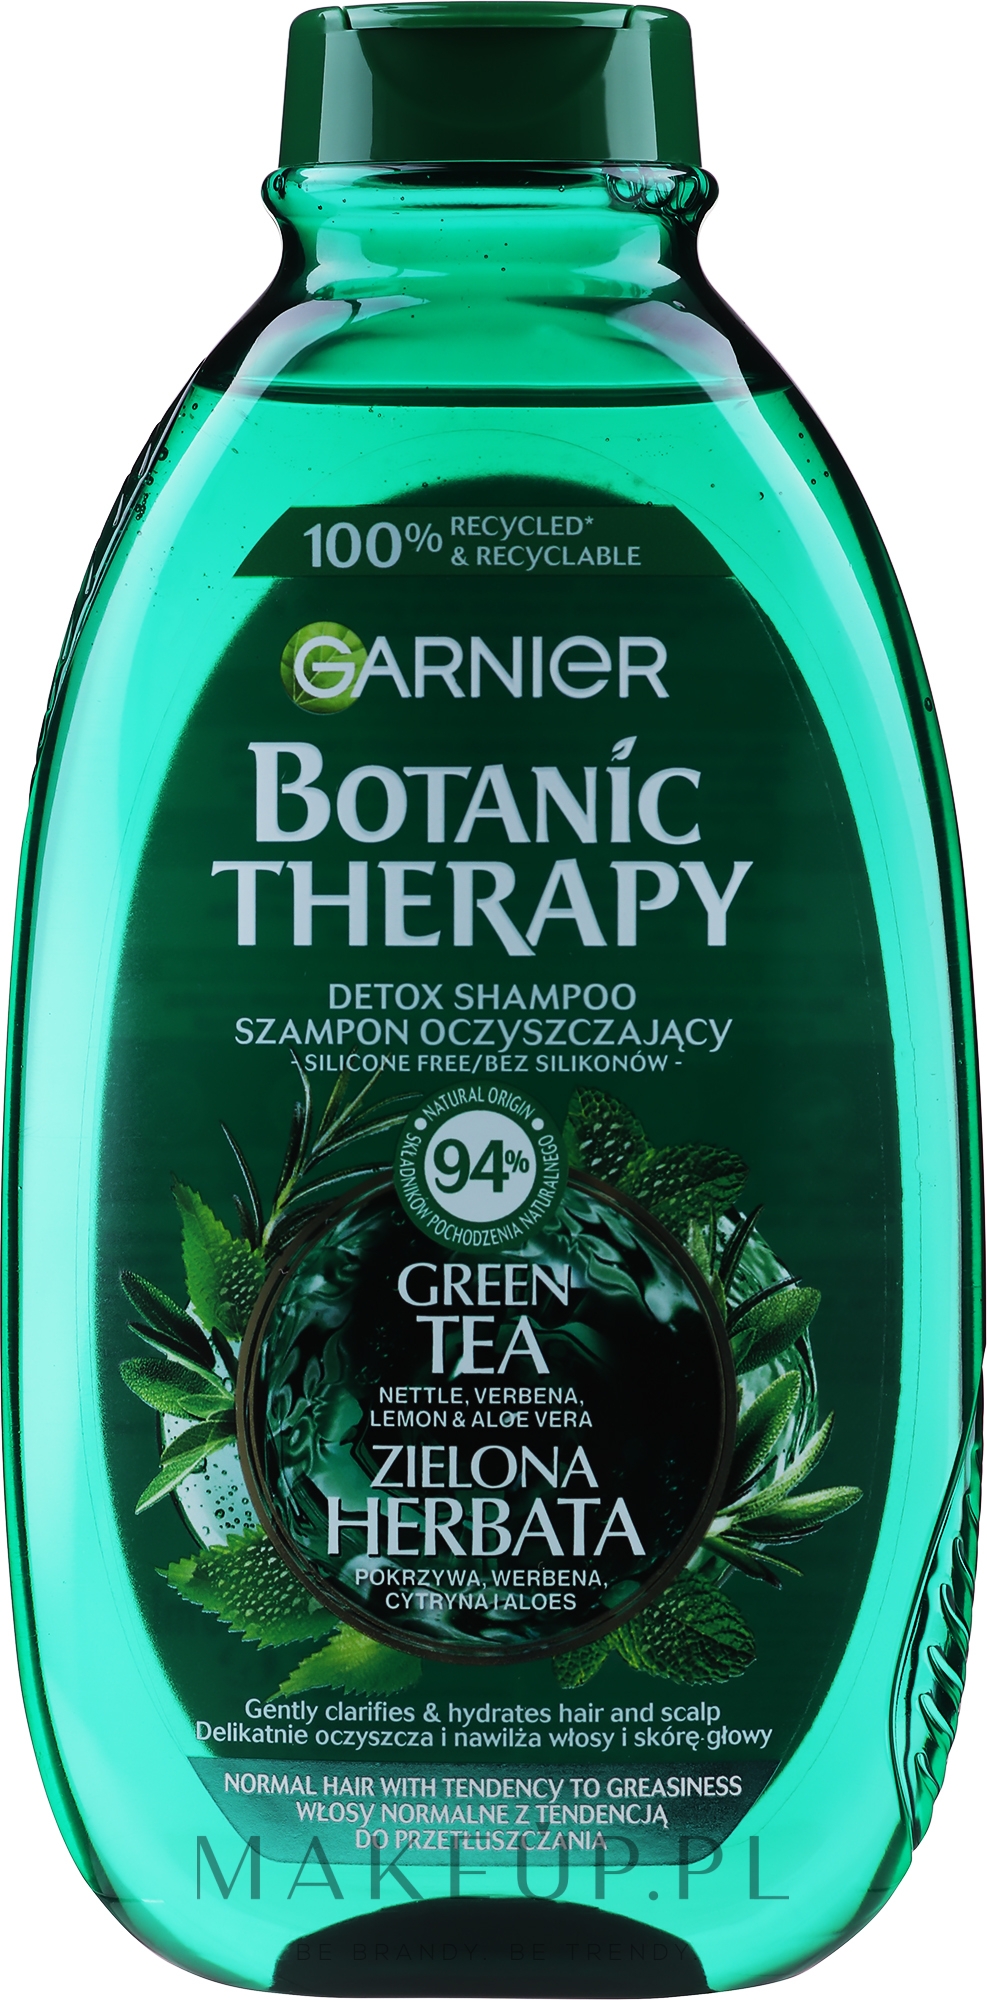 Szampon oczyszczający i orzeźwiający do włosów normalnych z tendencją do przetłuszczania Zielona Herbata, Eukaliptus & Cytruss - Garnier Botanic Therapy — Zdjęcie 400 ml